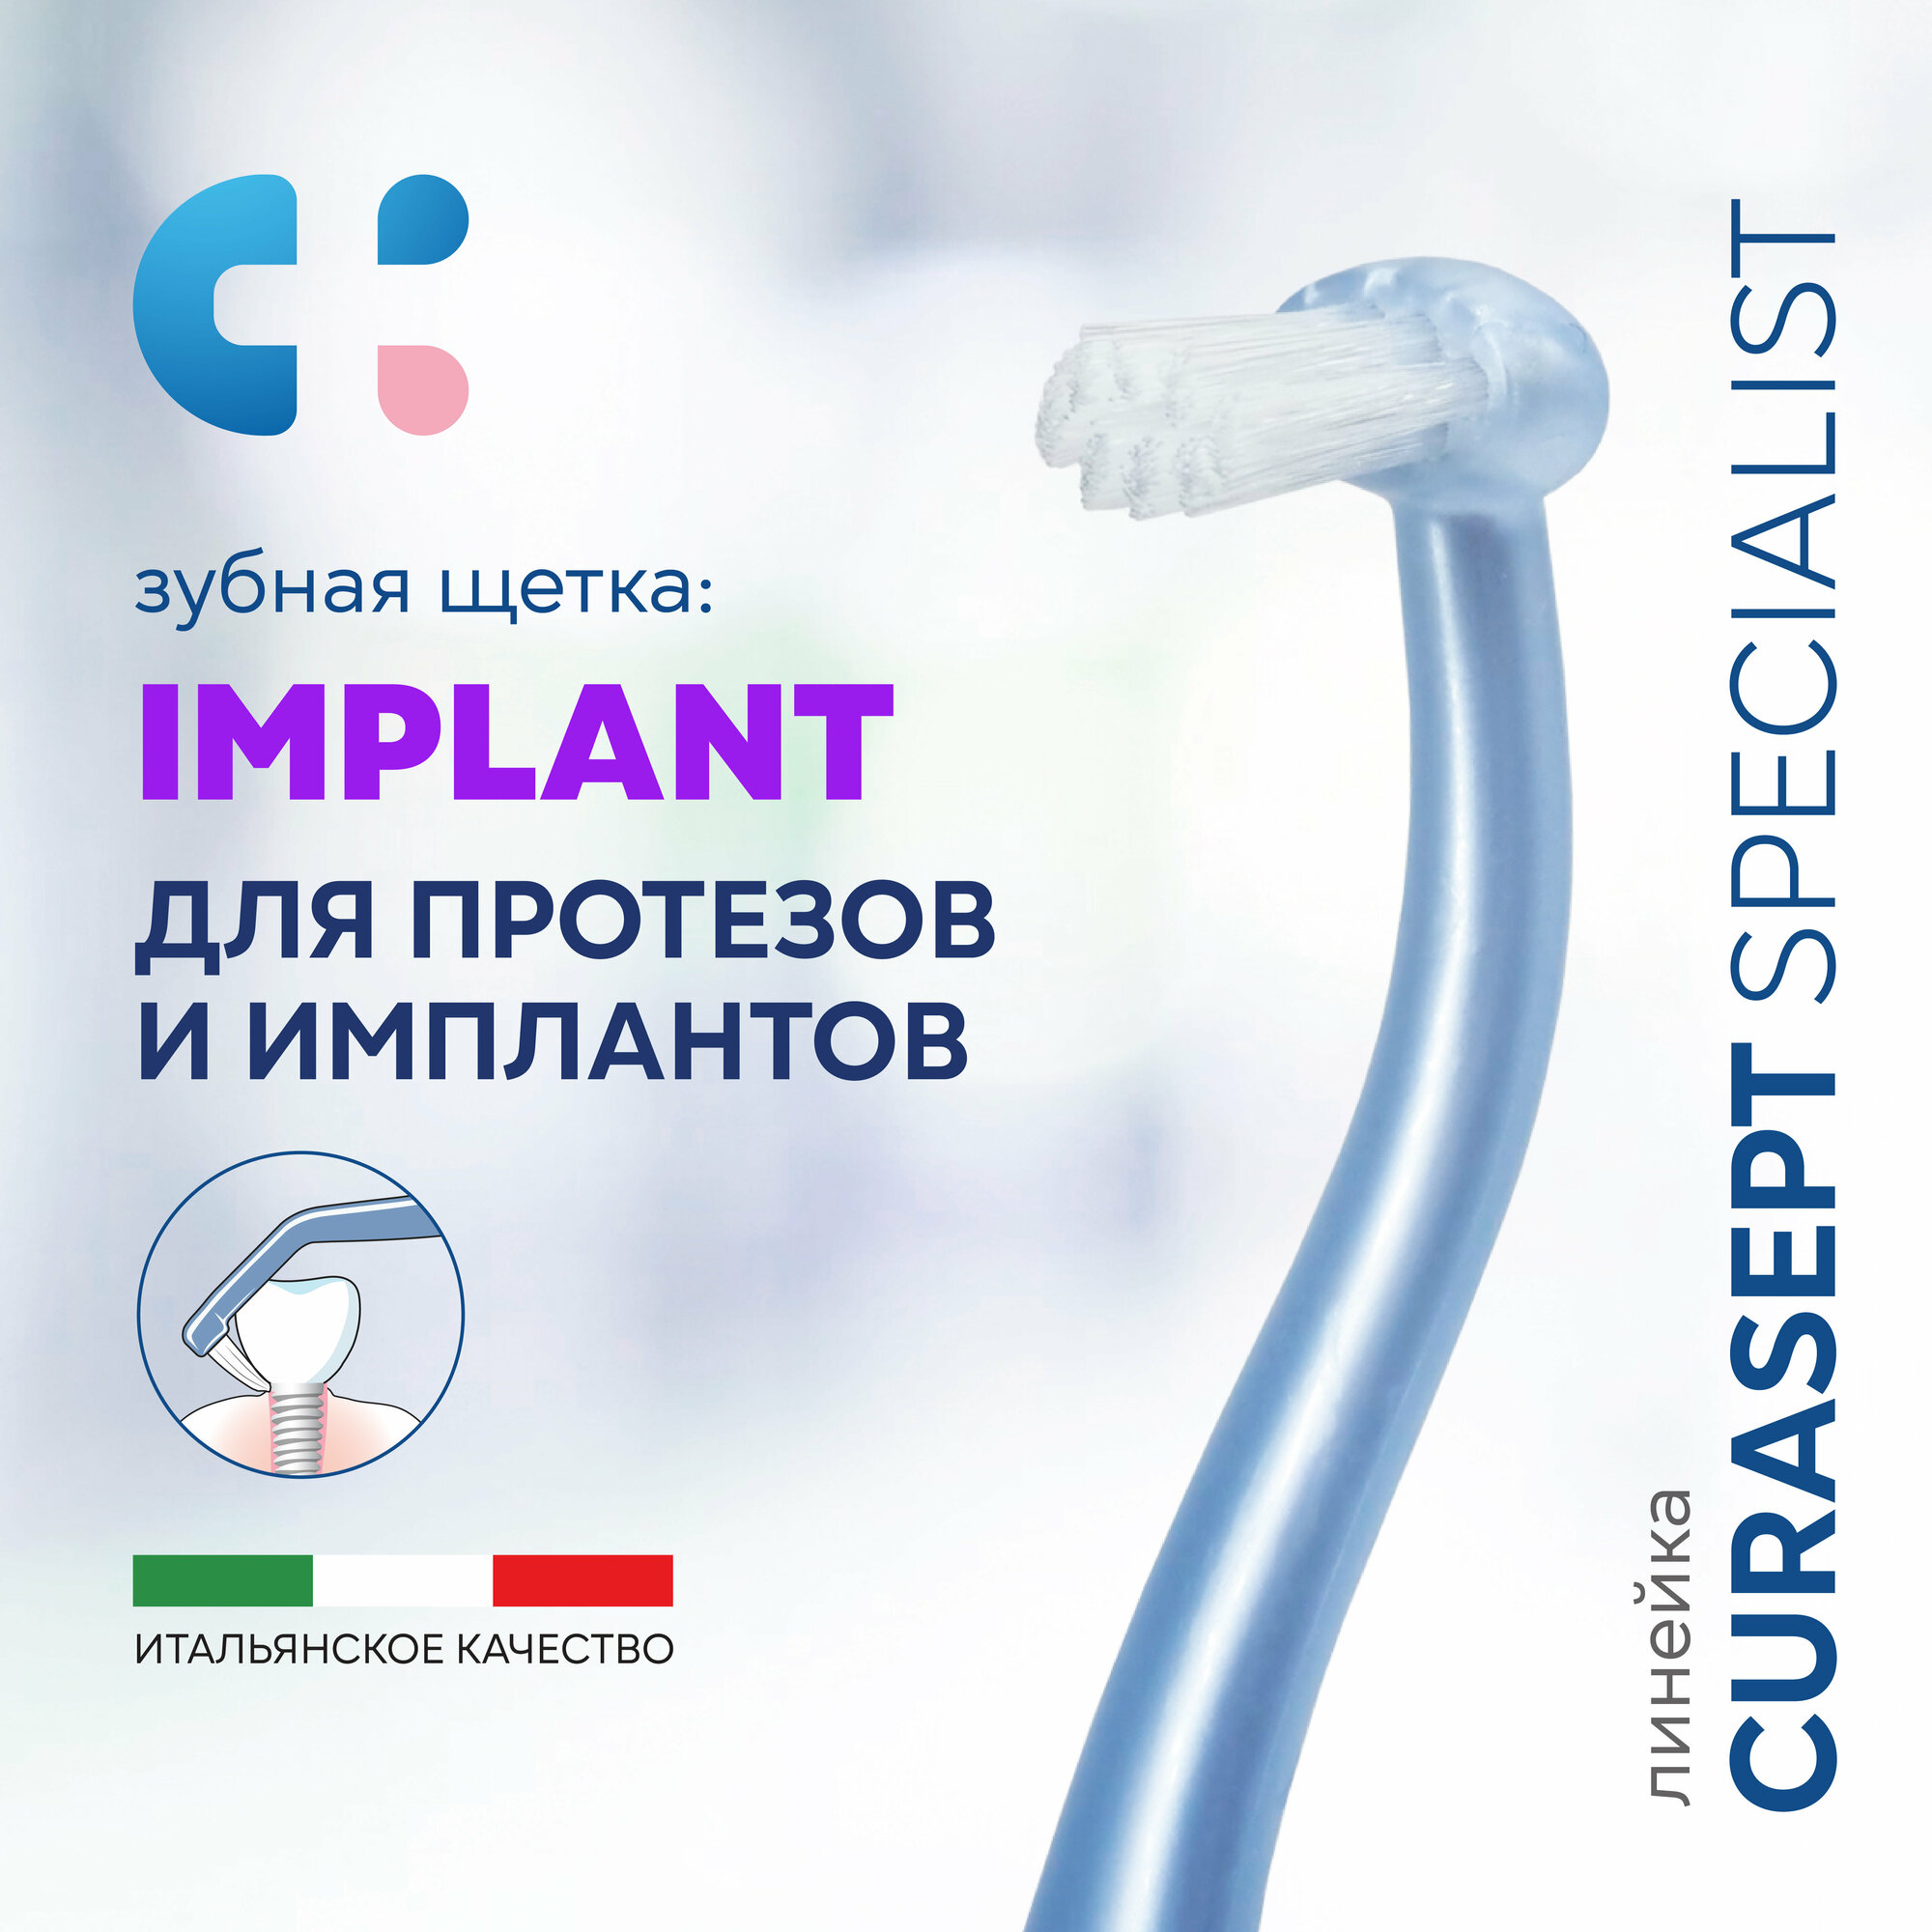 Зубная щетка монопучковая CURASEPT Specialist Implant для имплантов, Курасепт, Италия, голубой